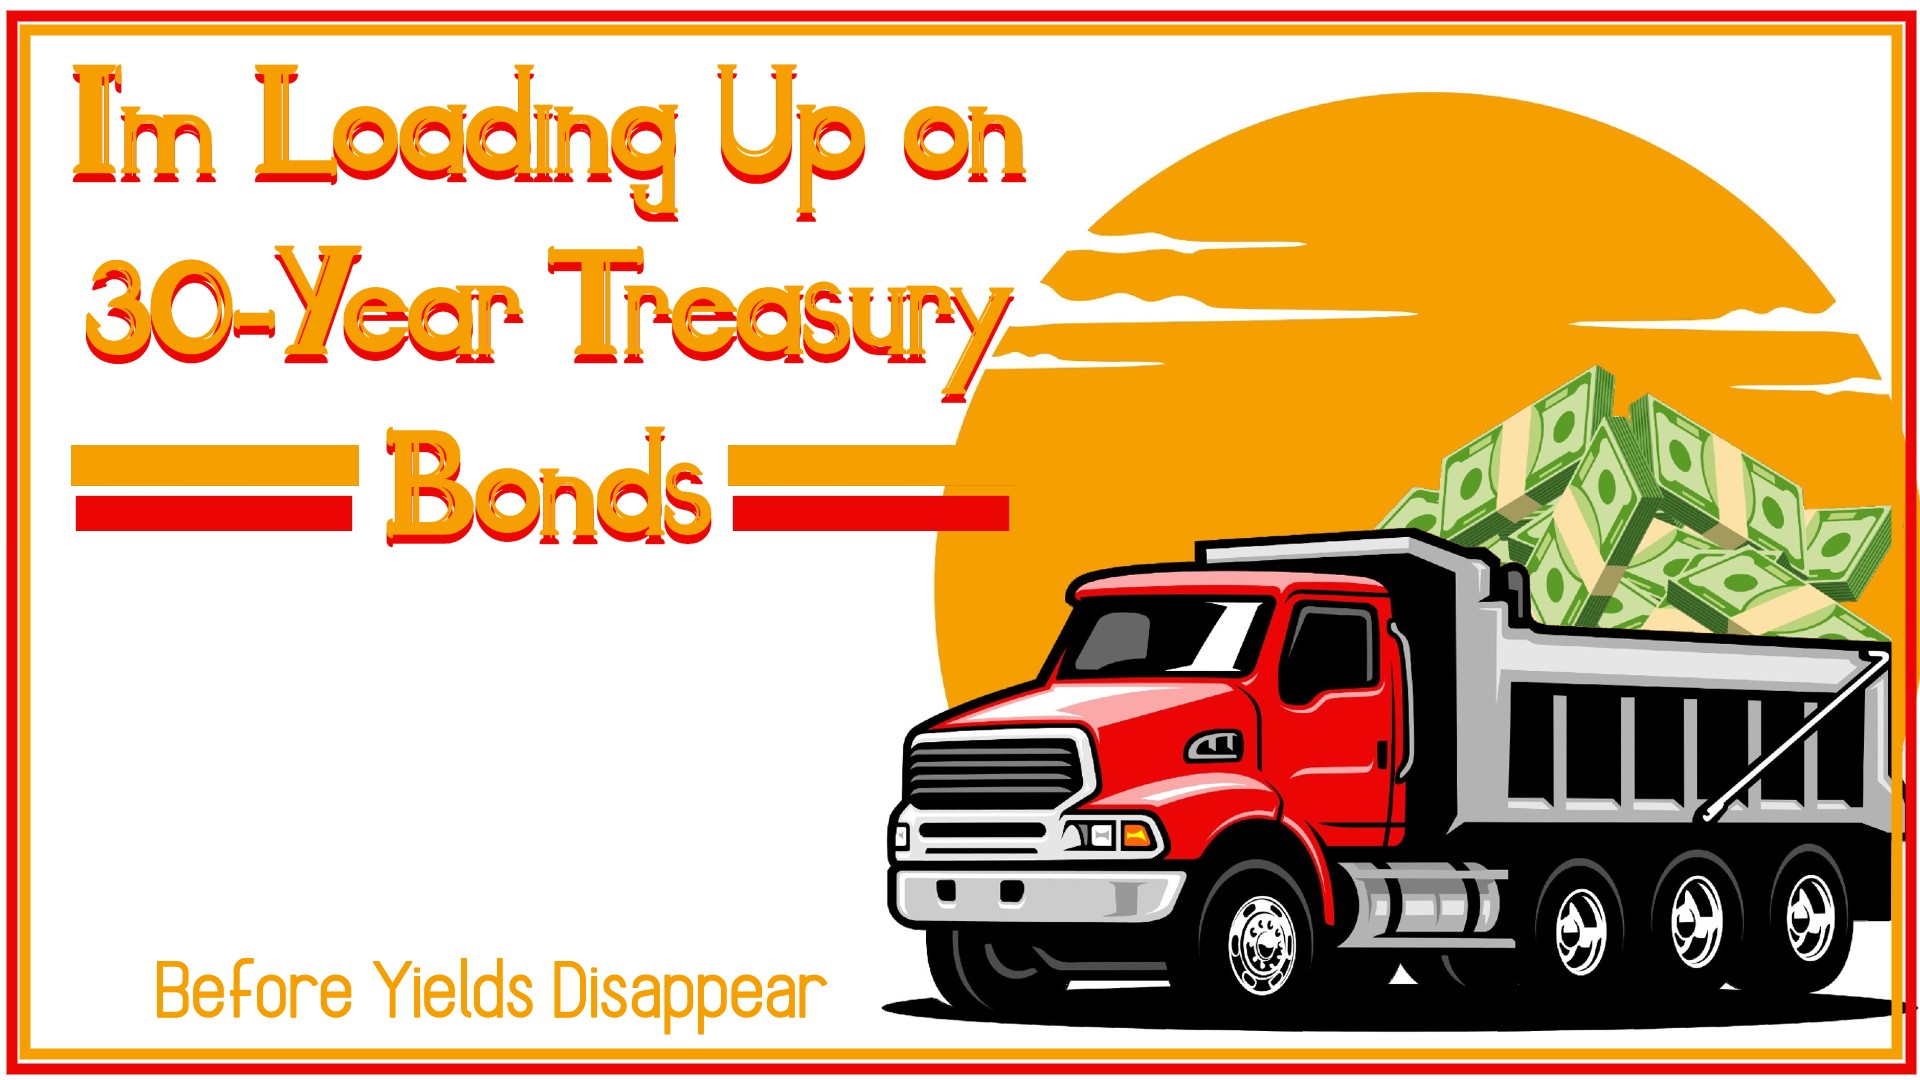 I'm Loading Up on 30-Year Treasury Bonds